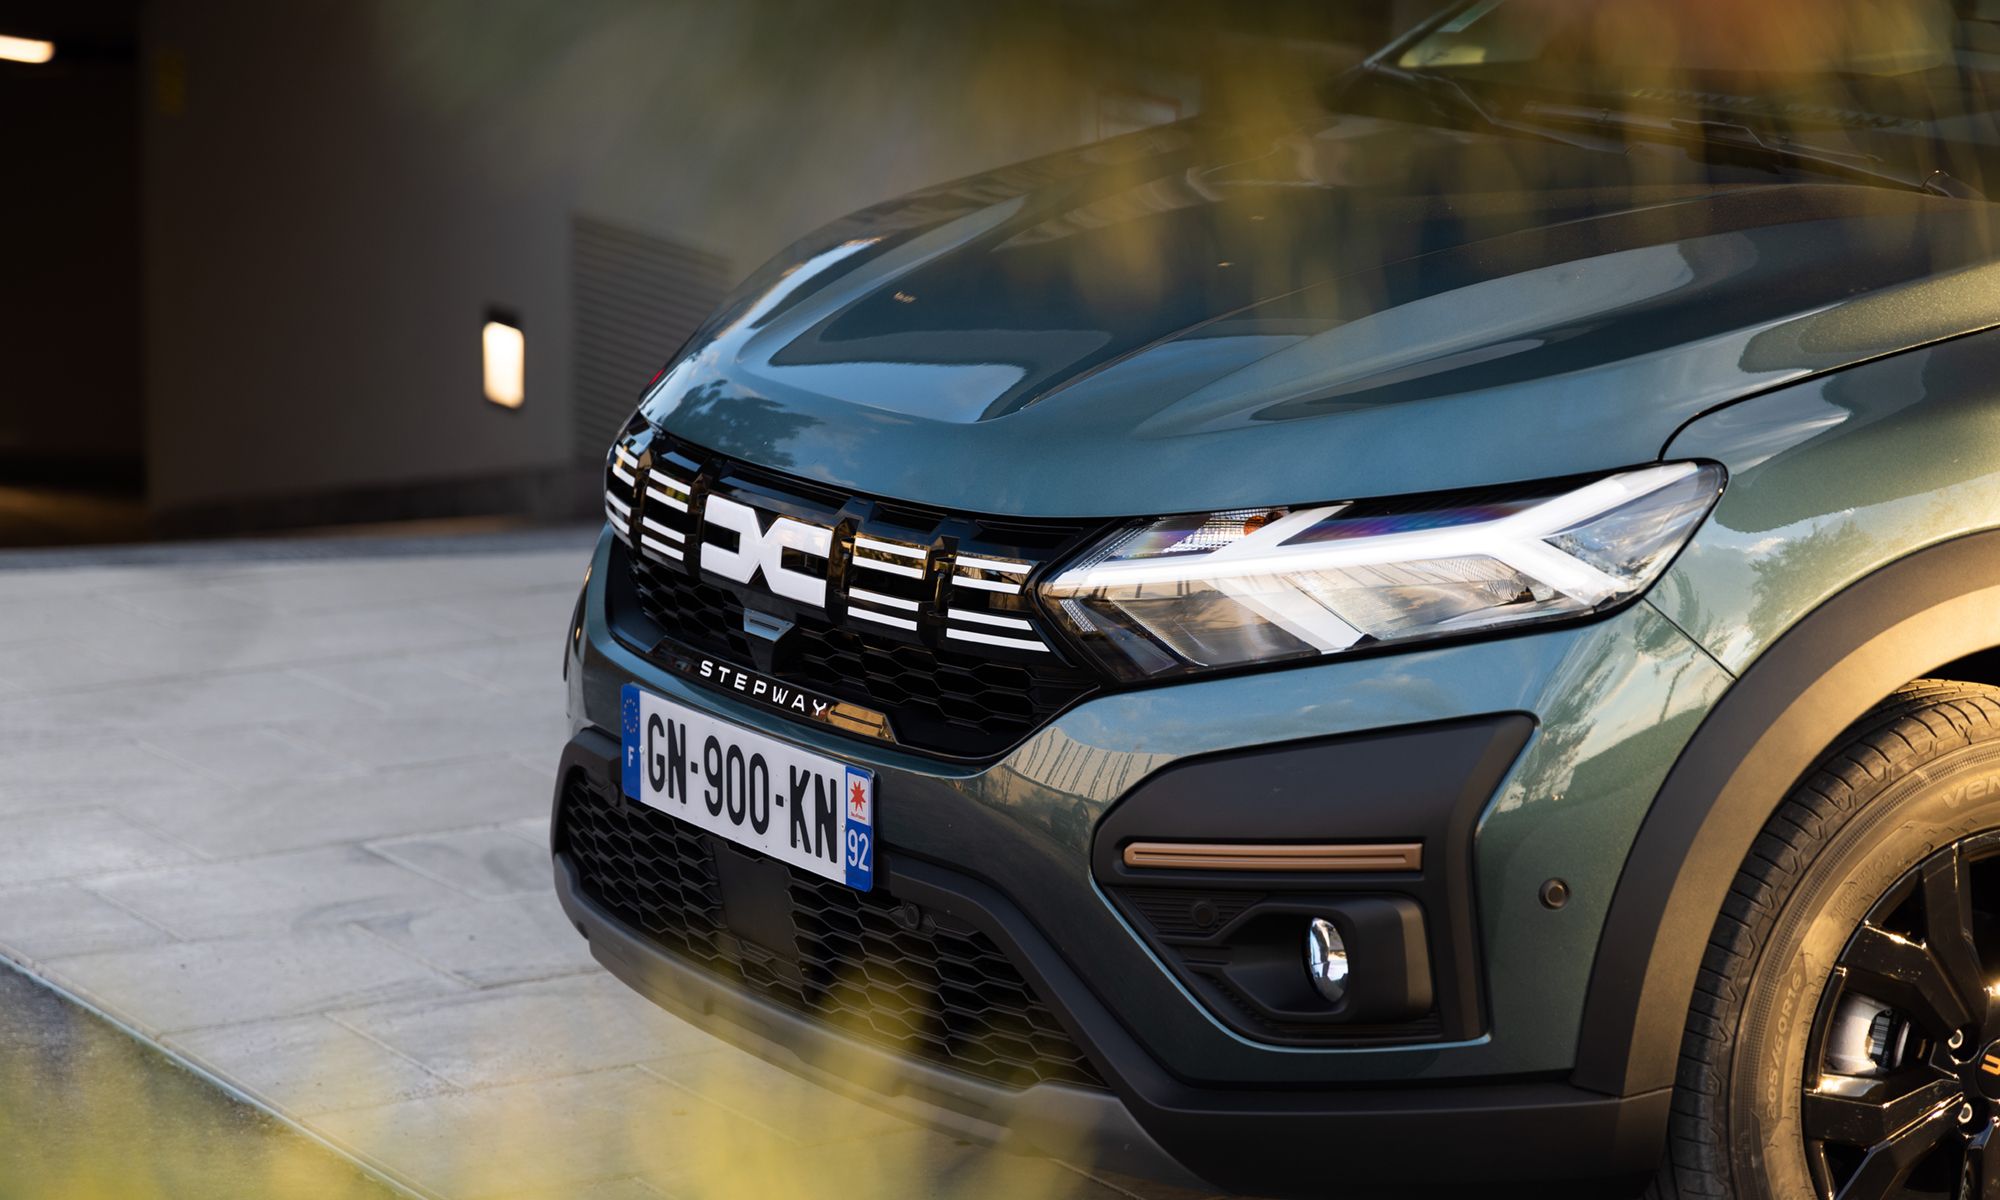 Para comercializarse como un vehículo asequible, el próximo Dacia Sandero eléctrico renunciará a tecnologías punteras.